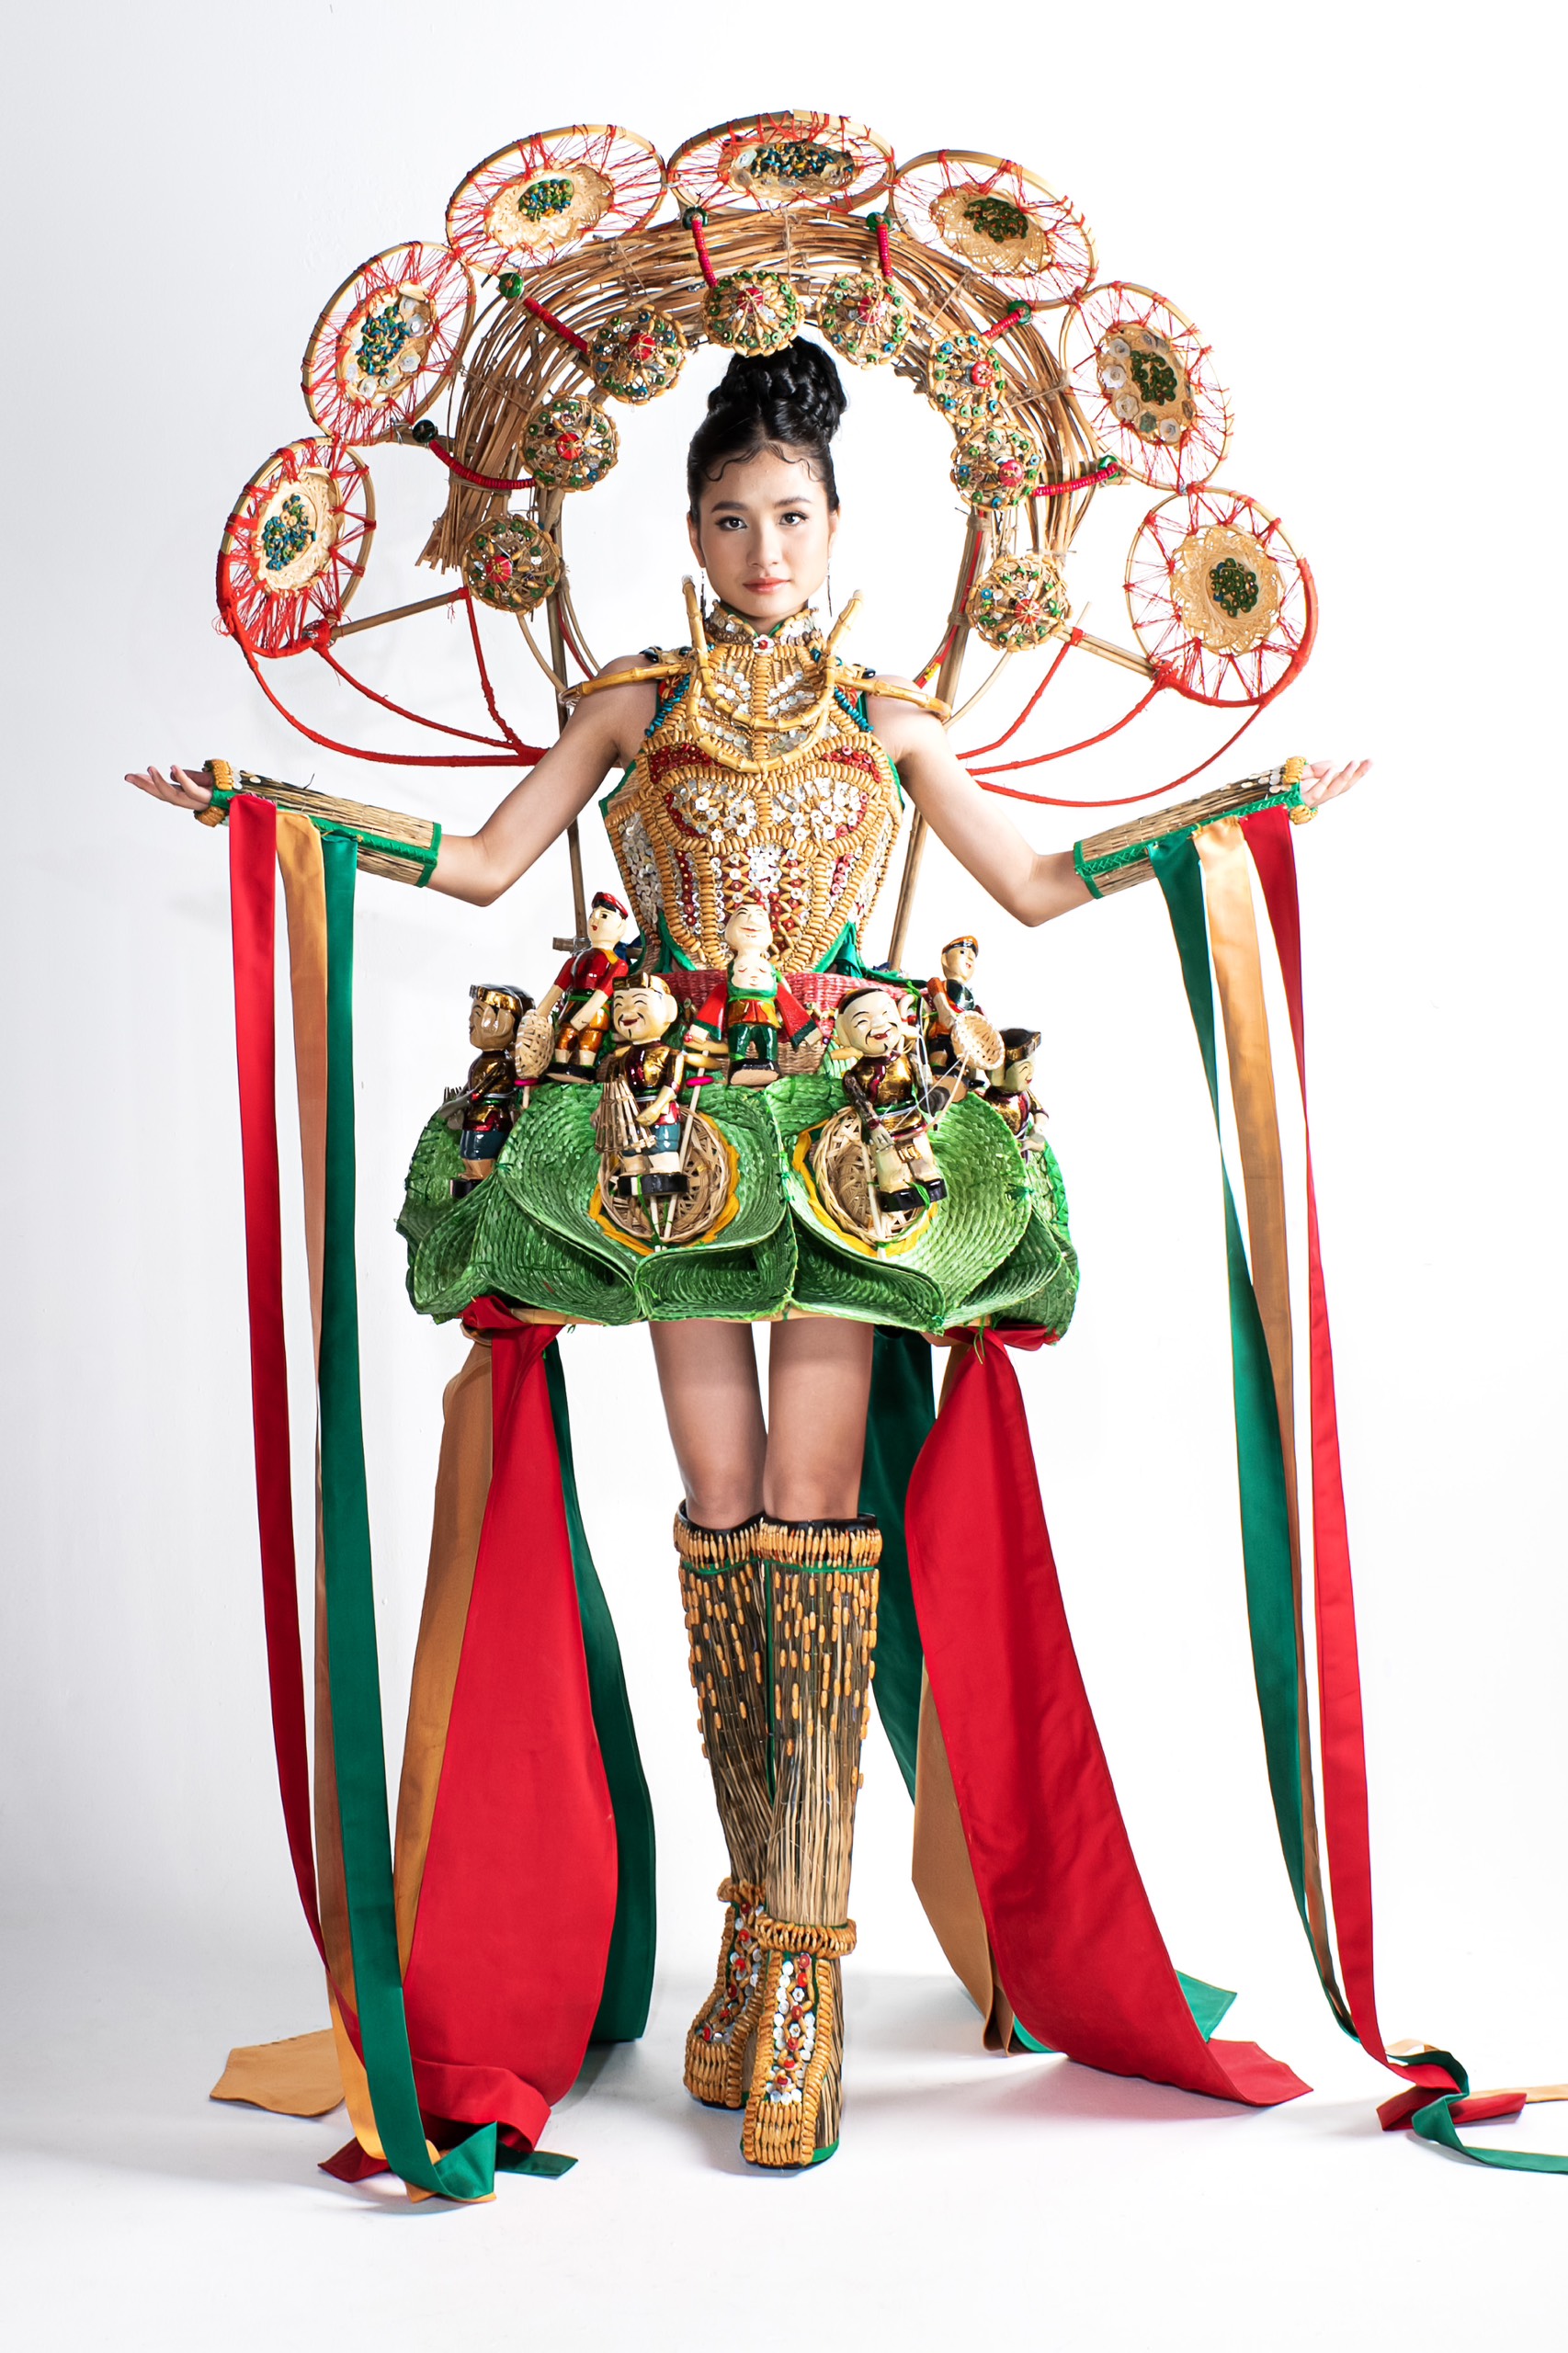 Bộ trang phục do NTK Nguyễn Hữu Bình sáng tạo, không chỉ gây ấn tượng với vẻ ngoài bắt mắt mà còn gây ấn tượng khi được lấy cảm hứng từ bộ môn nghệ thuật múa rối nước truyền thống của Việt Nam.